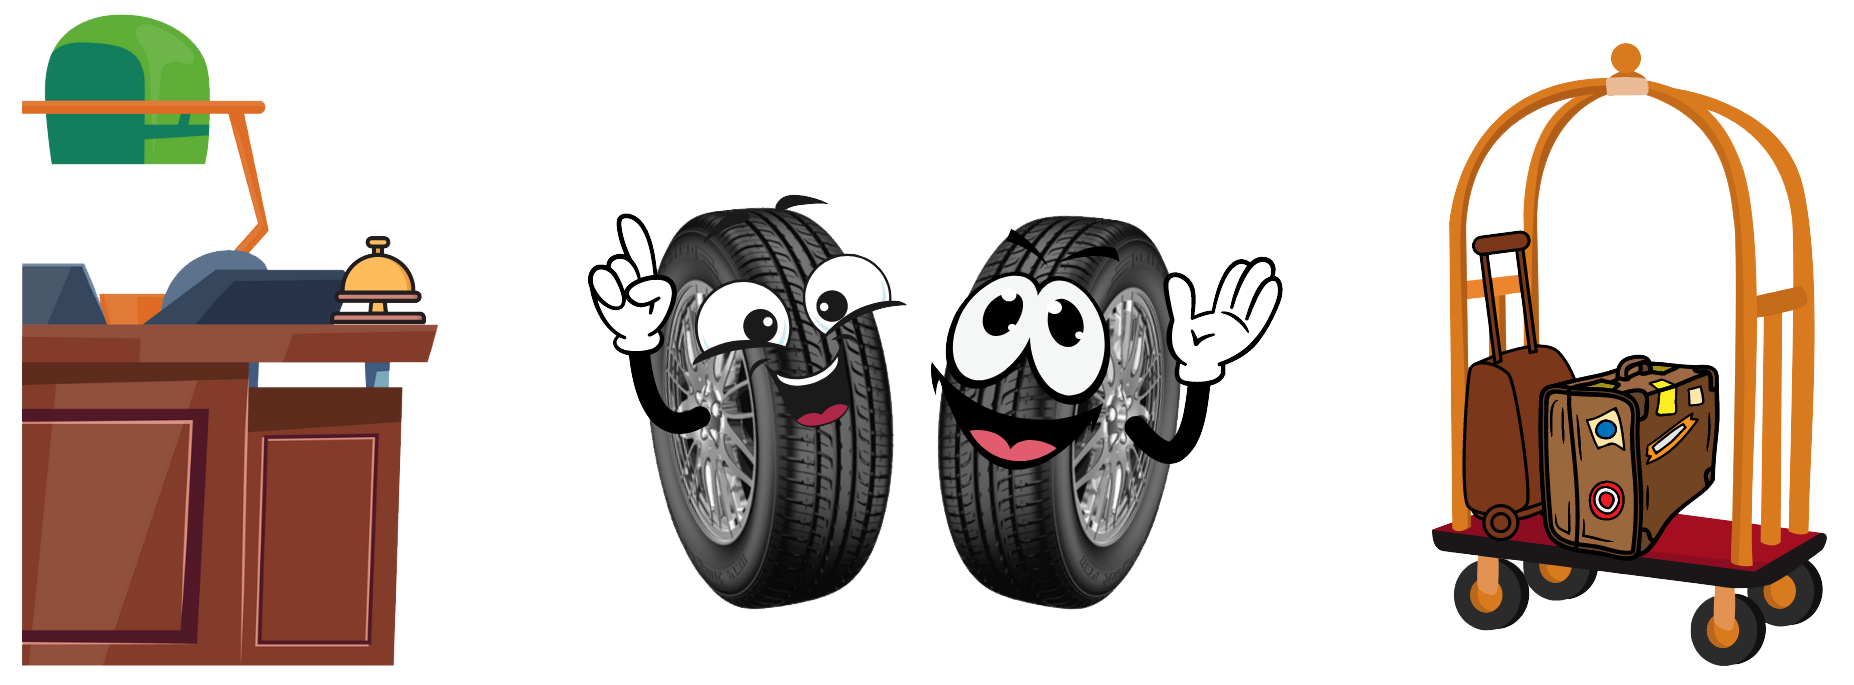 Tyre Figures